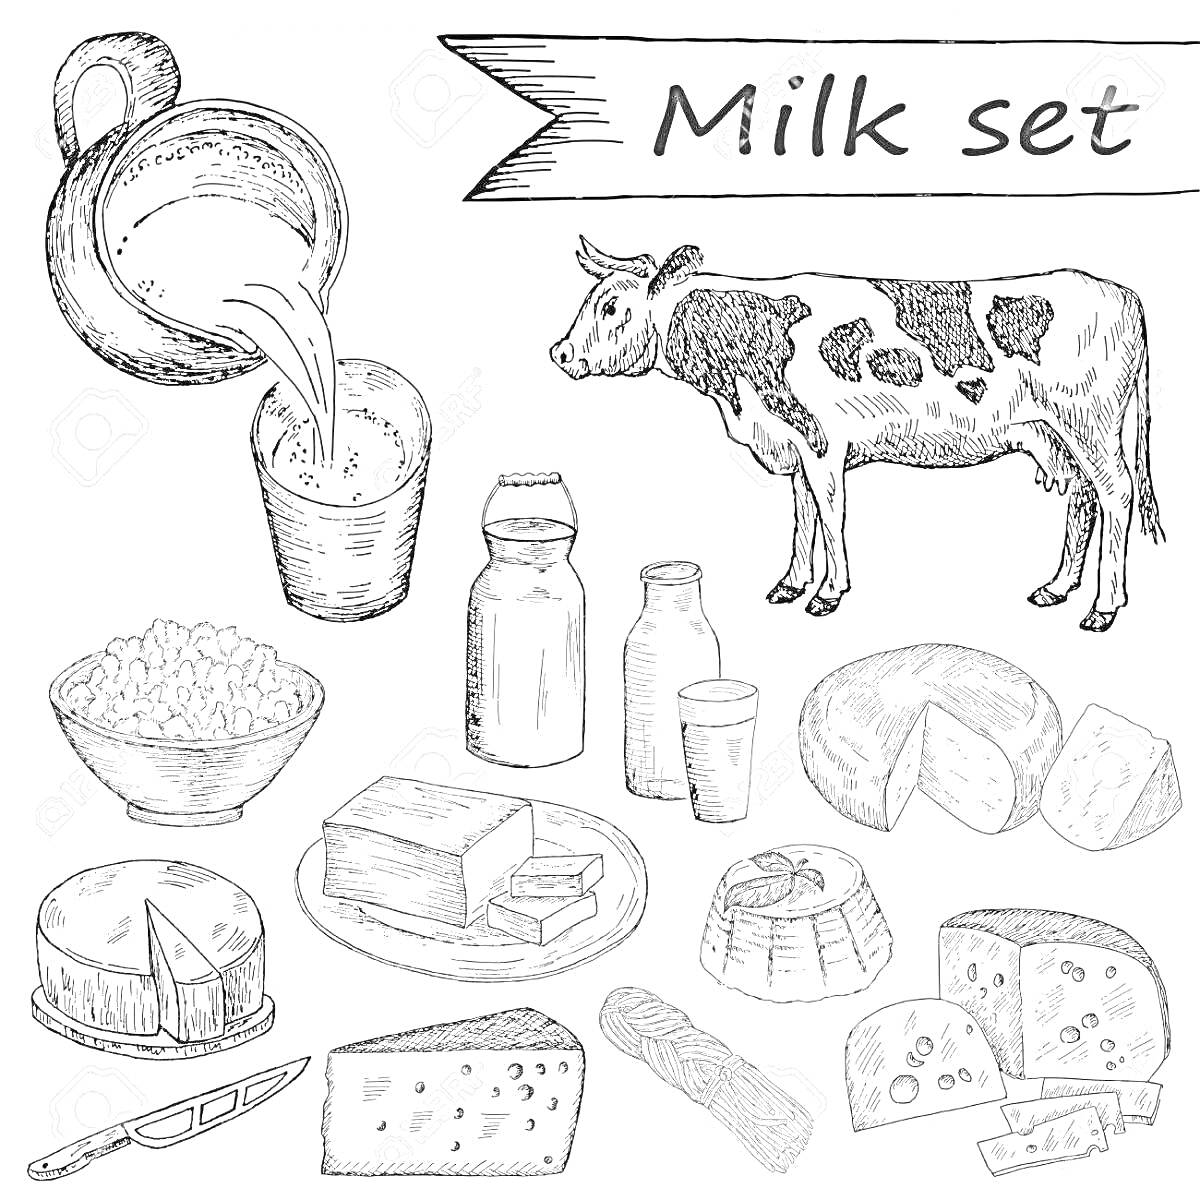 Раскраска Набор молочных продуктов для детей: корова, кувшин с молоком, стакан с молоком, миска с творогом, бутылка молока, йогурт, сырное колесо, кусочки сыра, плавленый сыр, нож.